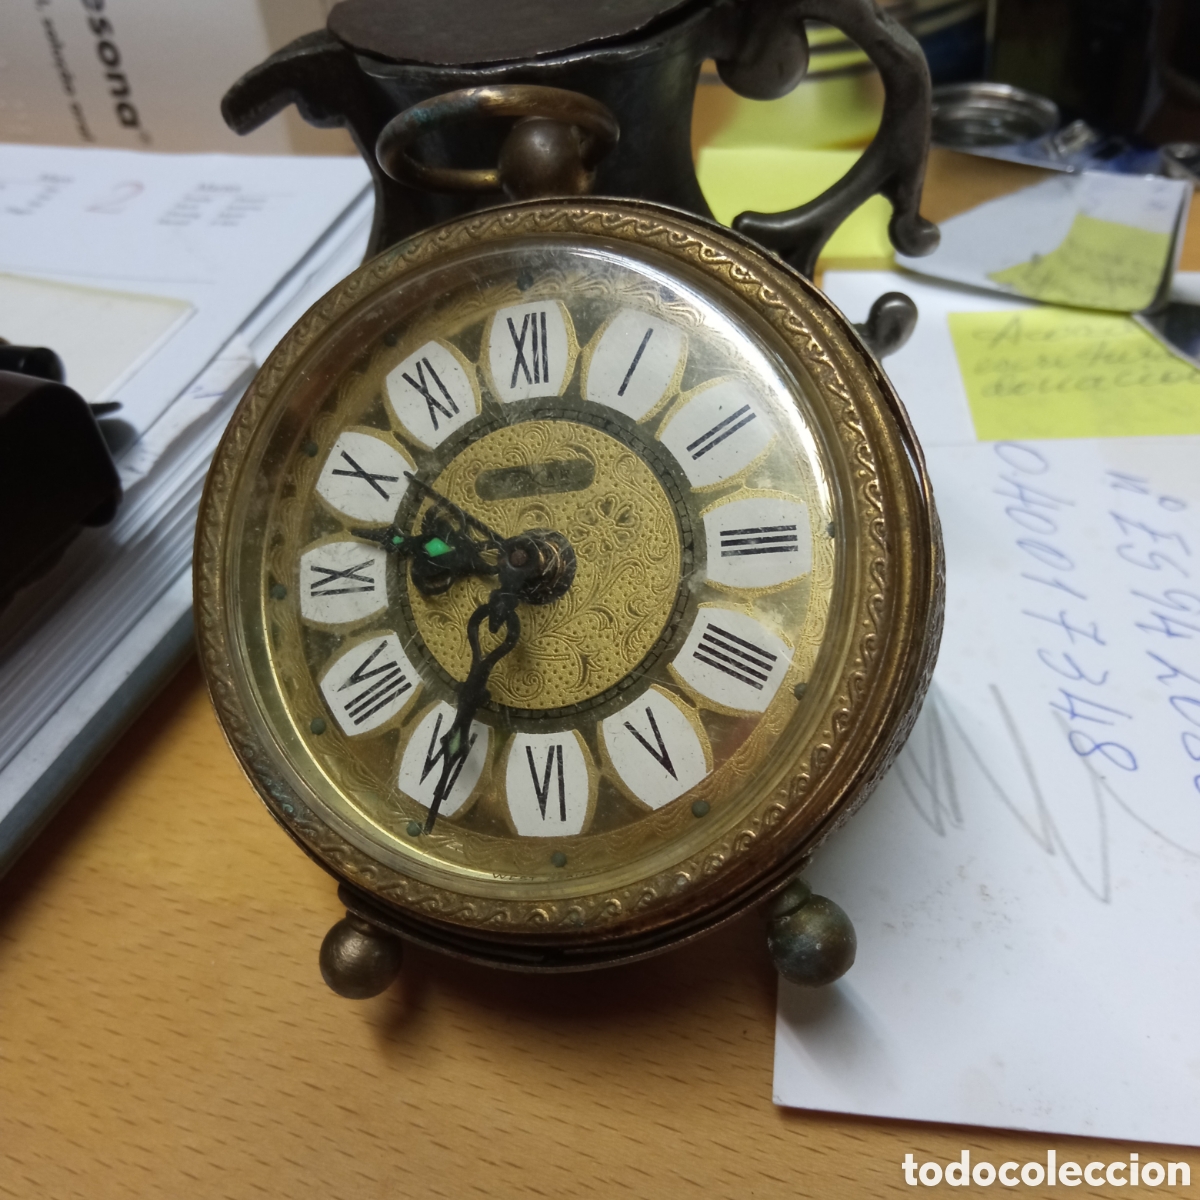 reloj despertador de mesilla años 50.telock - Compra venta en todocoleccion